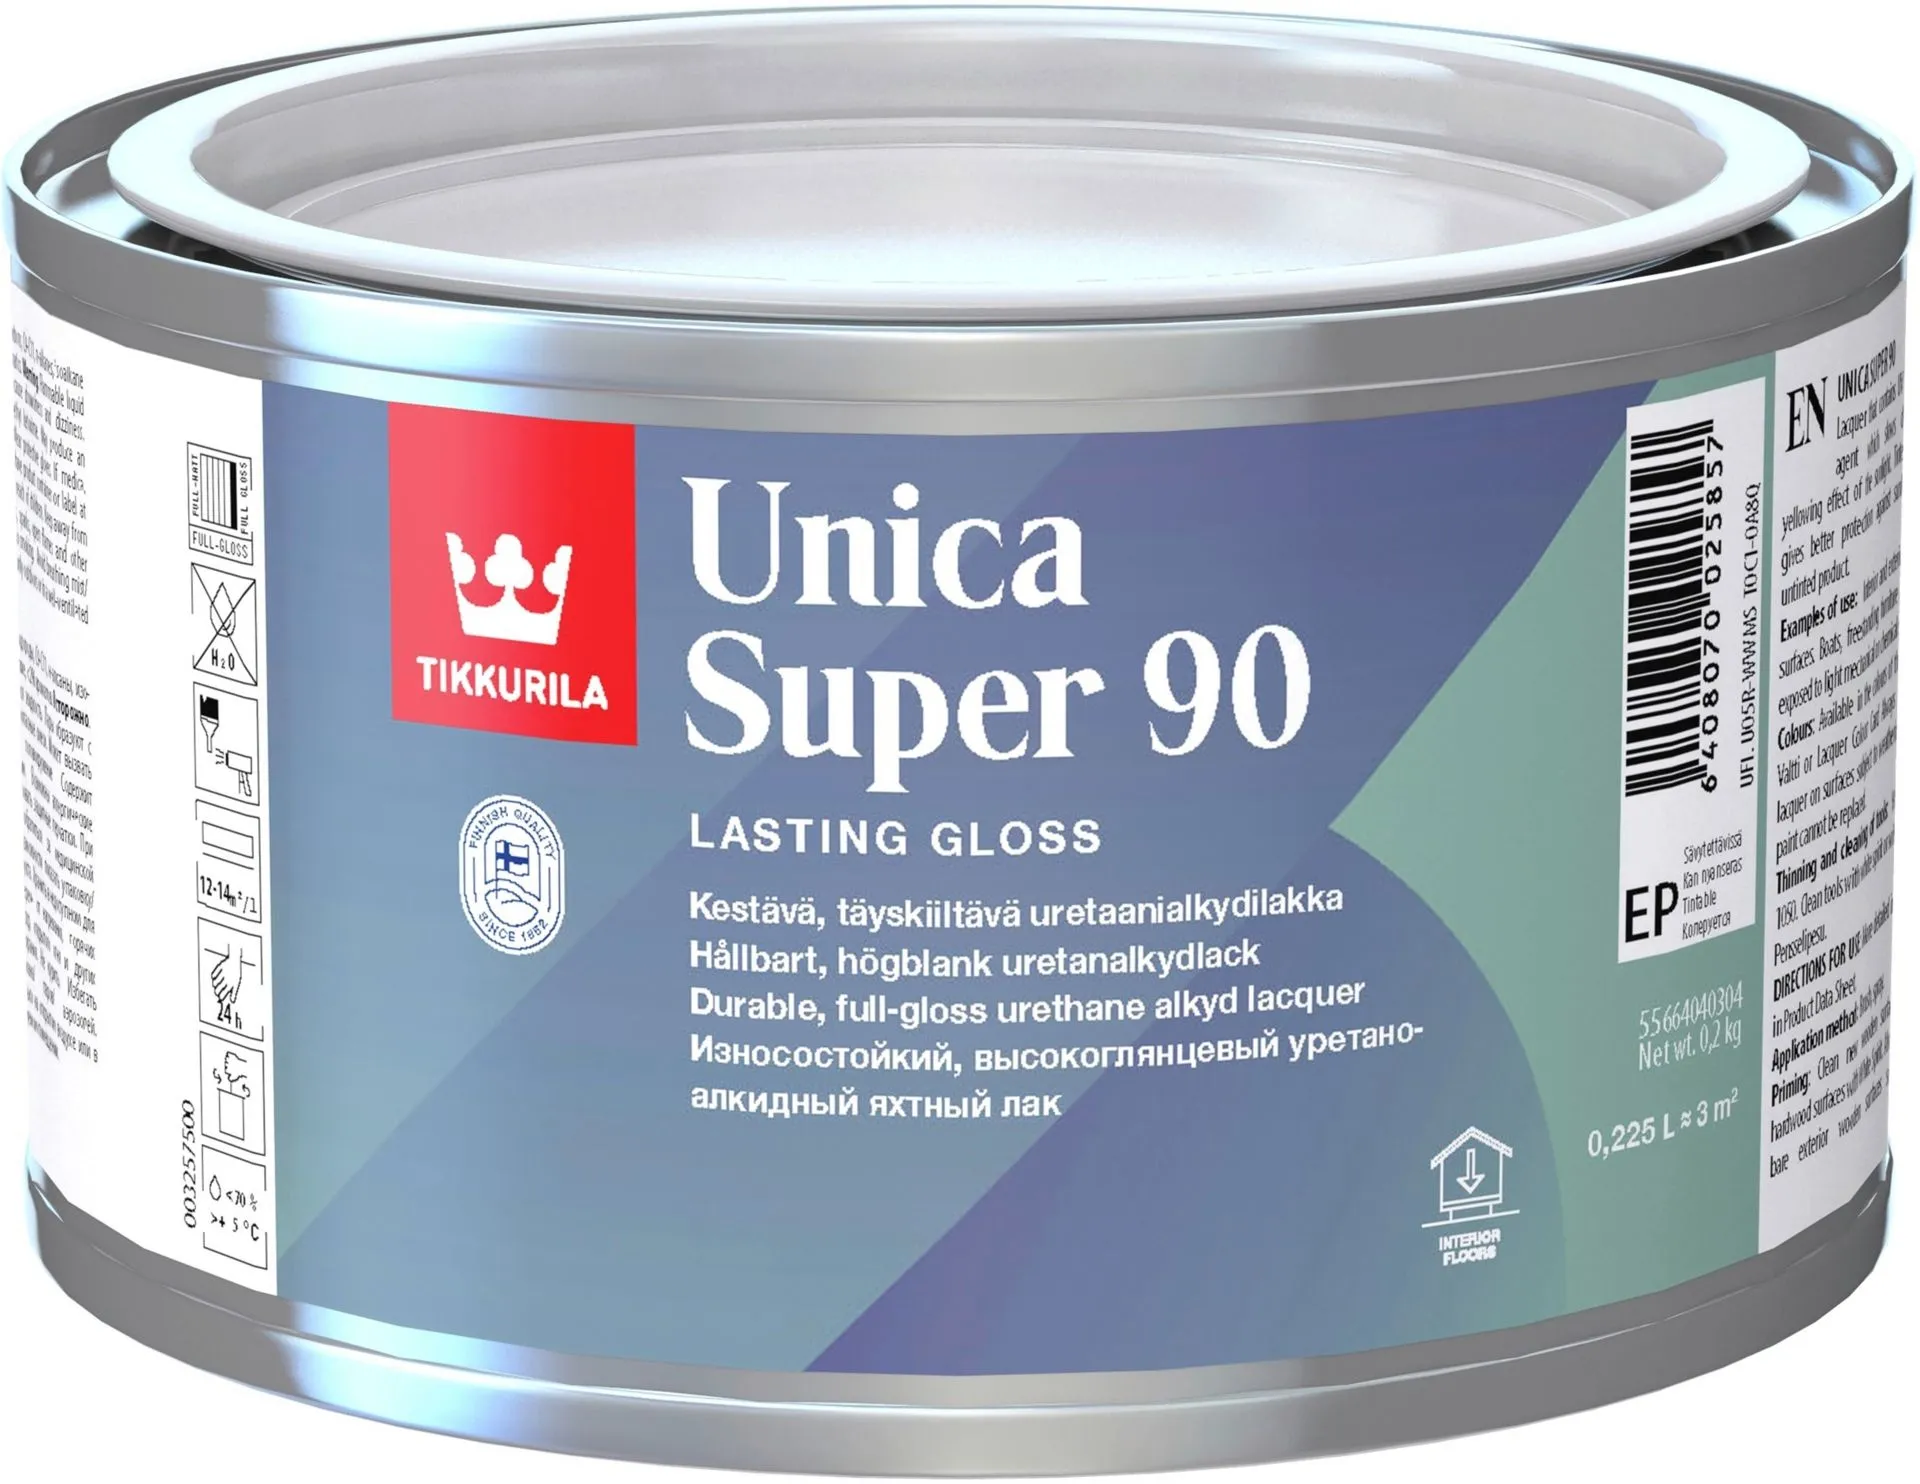 Tikkurila Unica Super 90 uretaanialkydilakka 0,225l kiiltävä sävytettävä